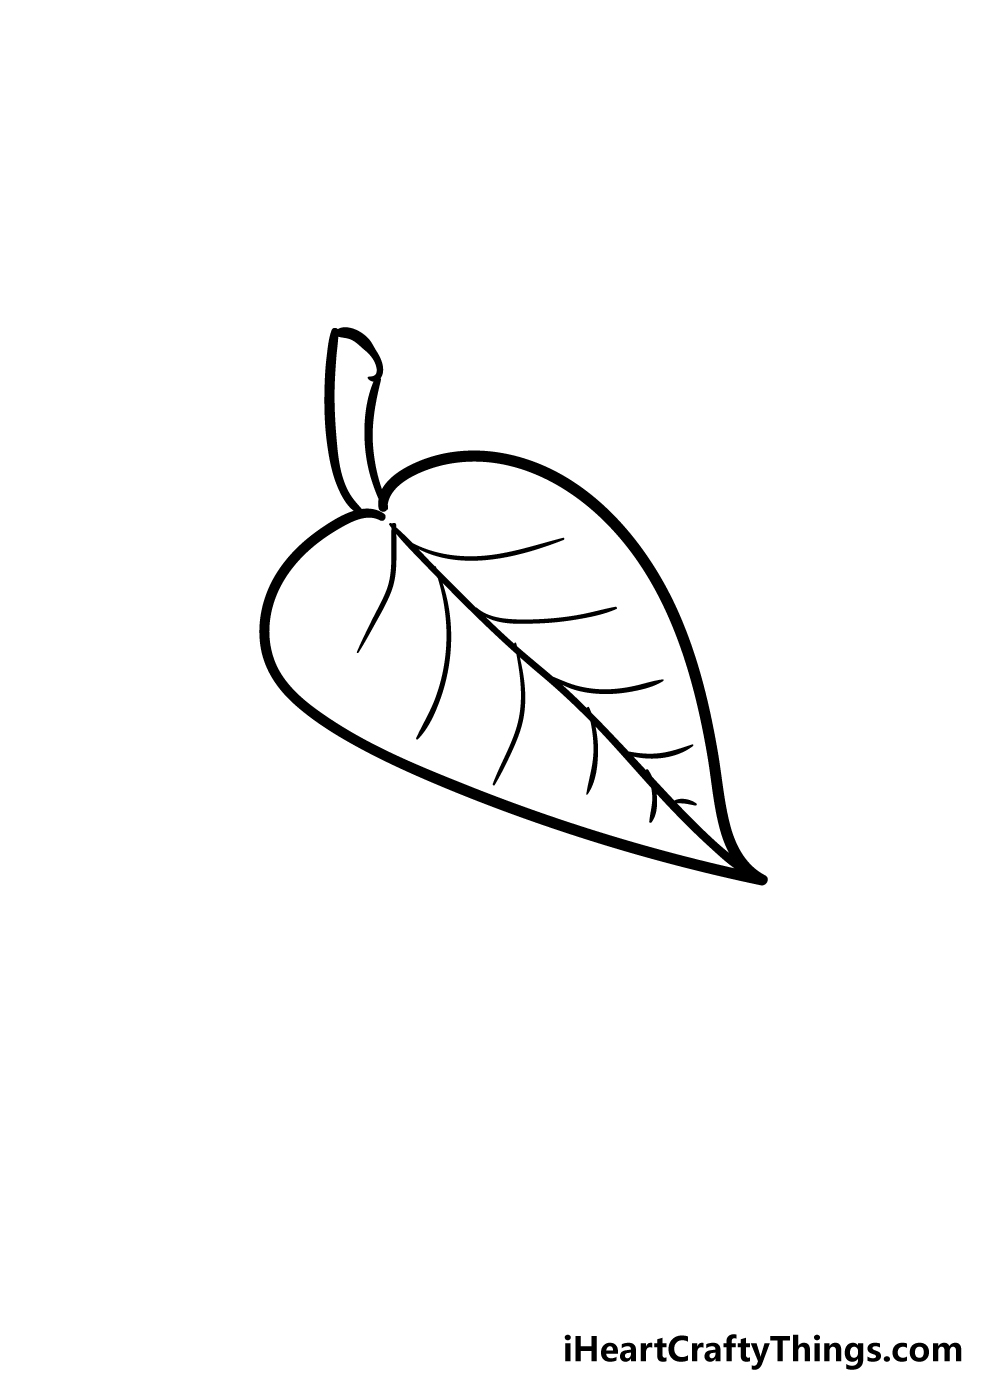 LEaf4 - Hướng dẫn cách vẽ chiếc lá cây đơn giản với 6 bước cơ bản